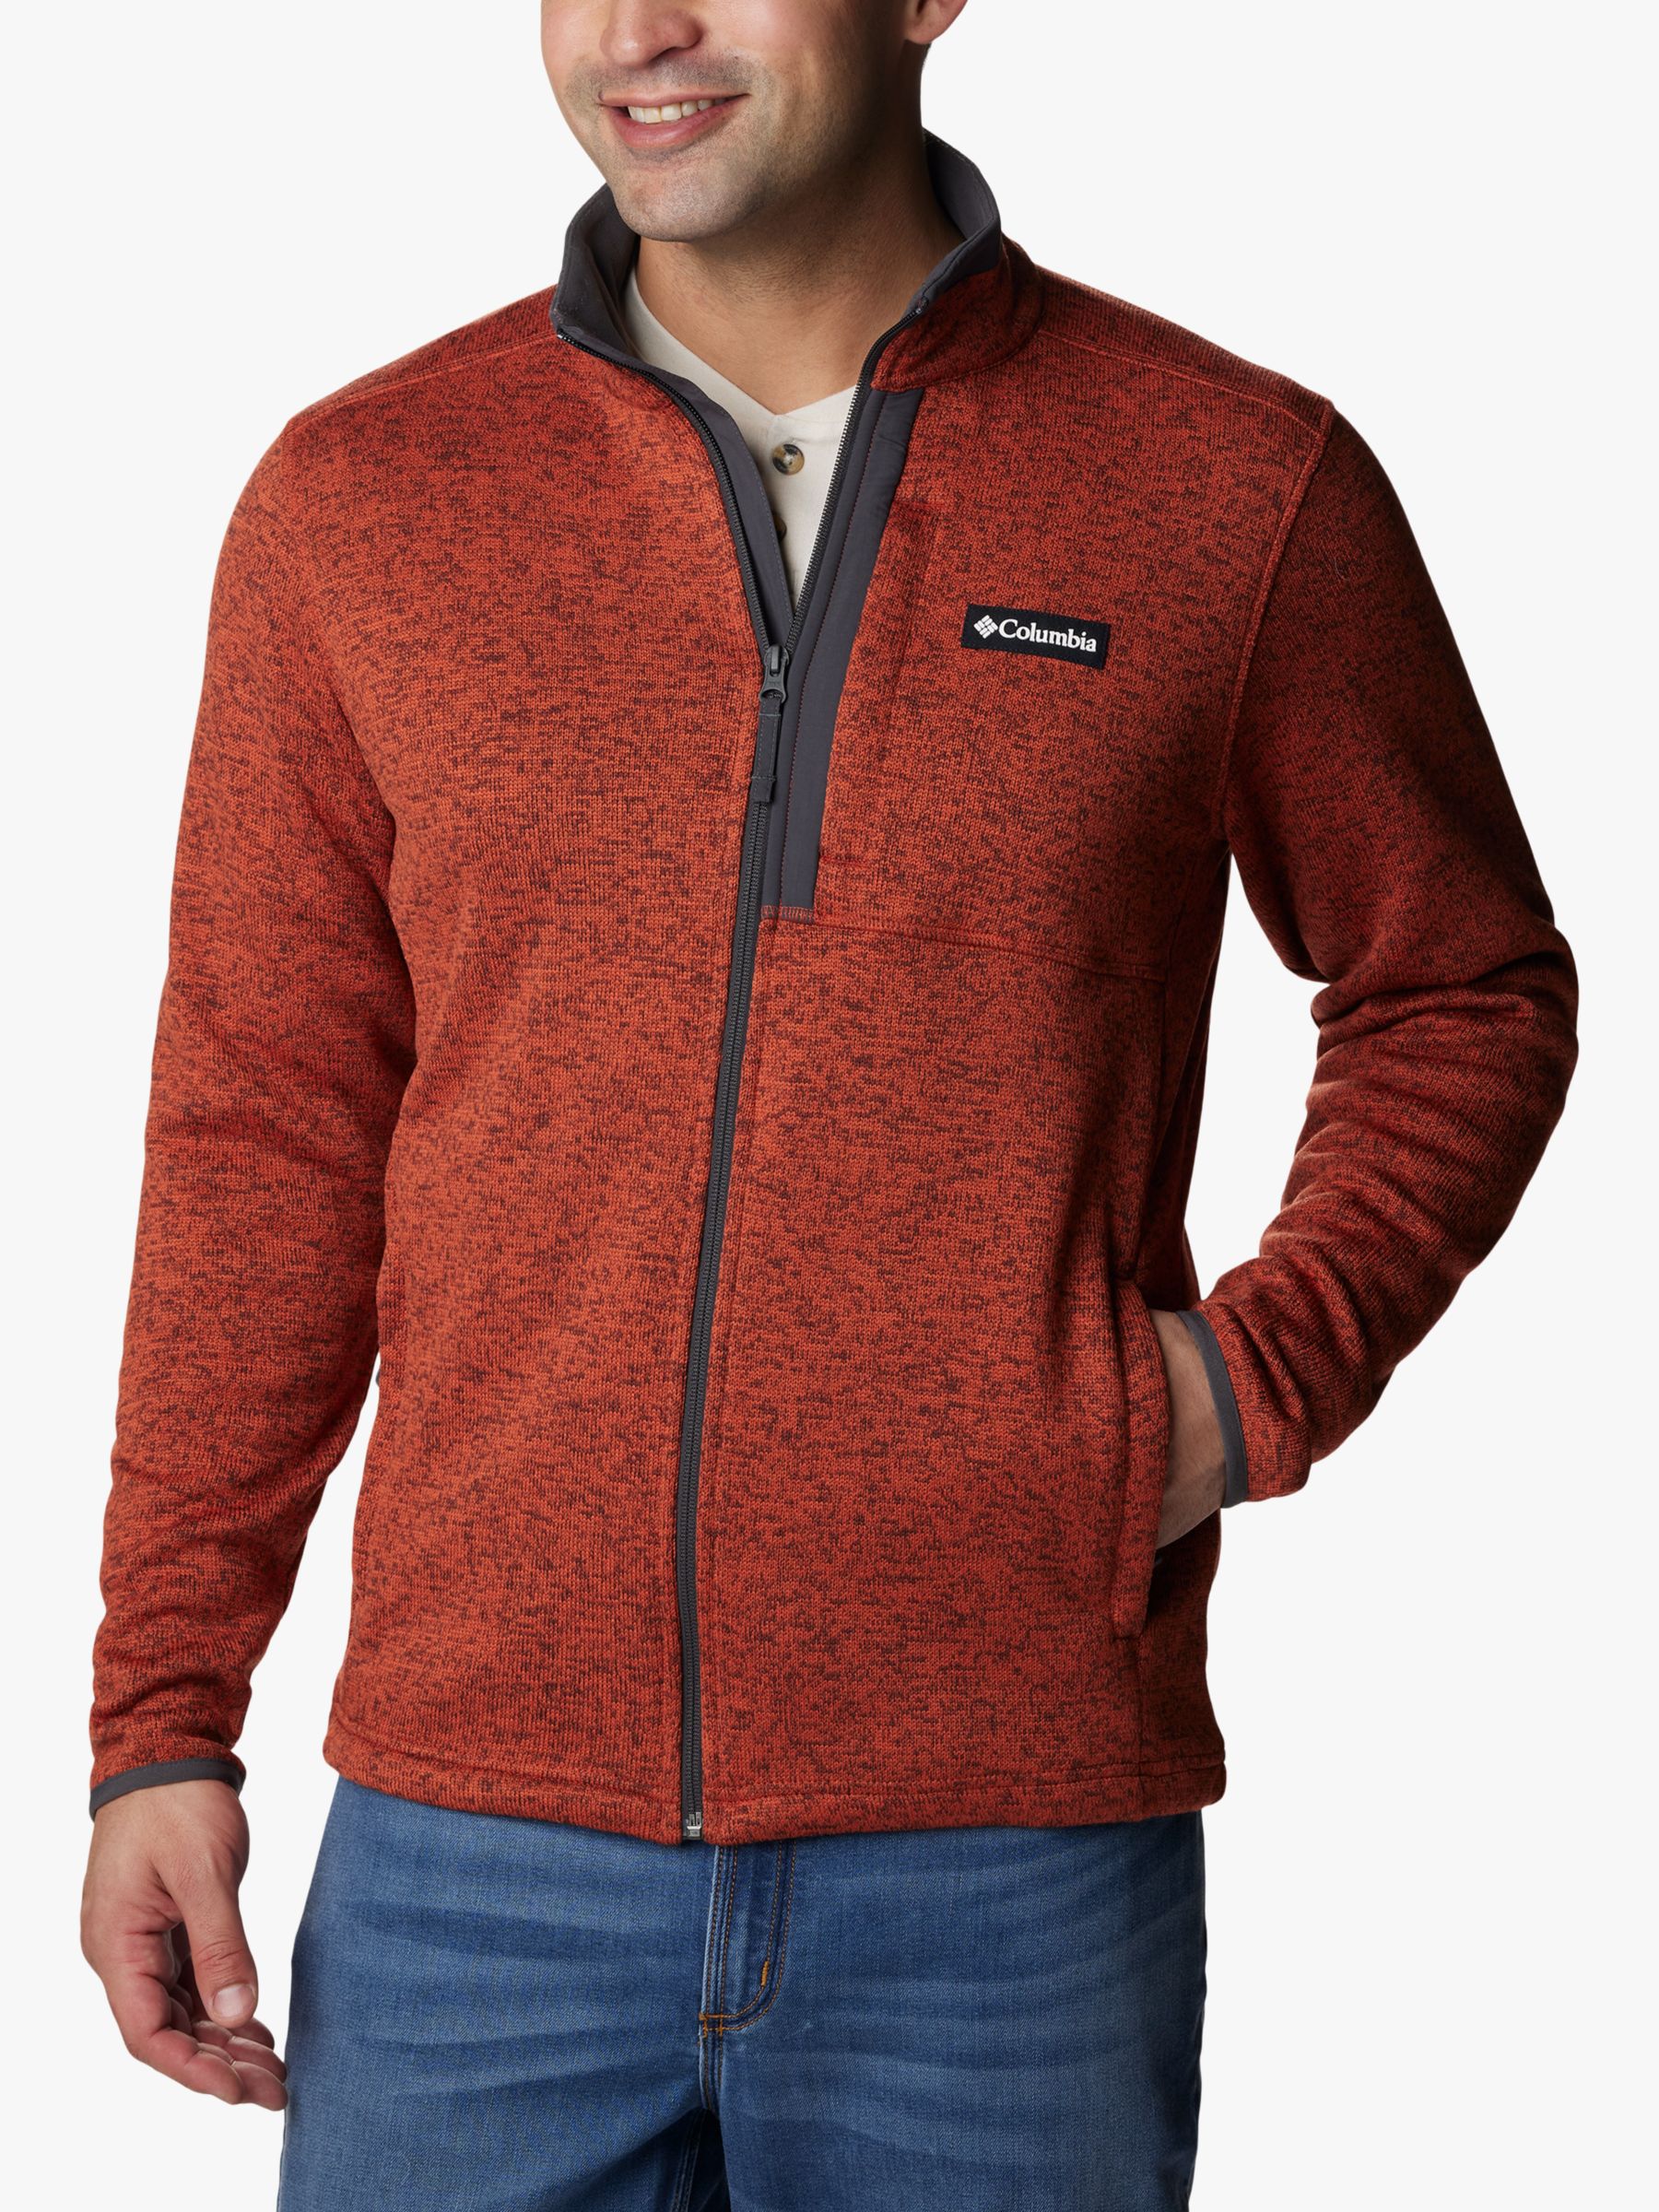 Columbia Sweater Weather™ Men's Full Zip Fleece, Warp Red Heather, S